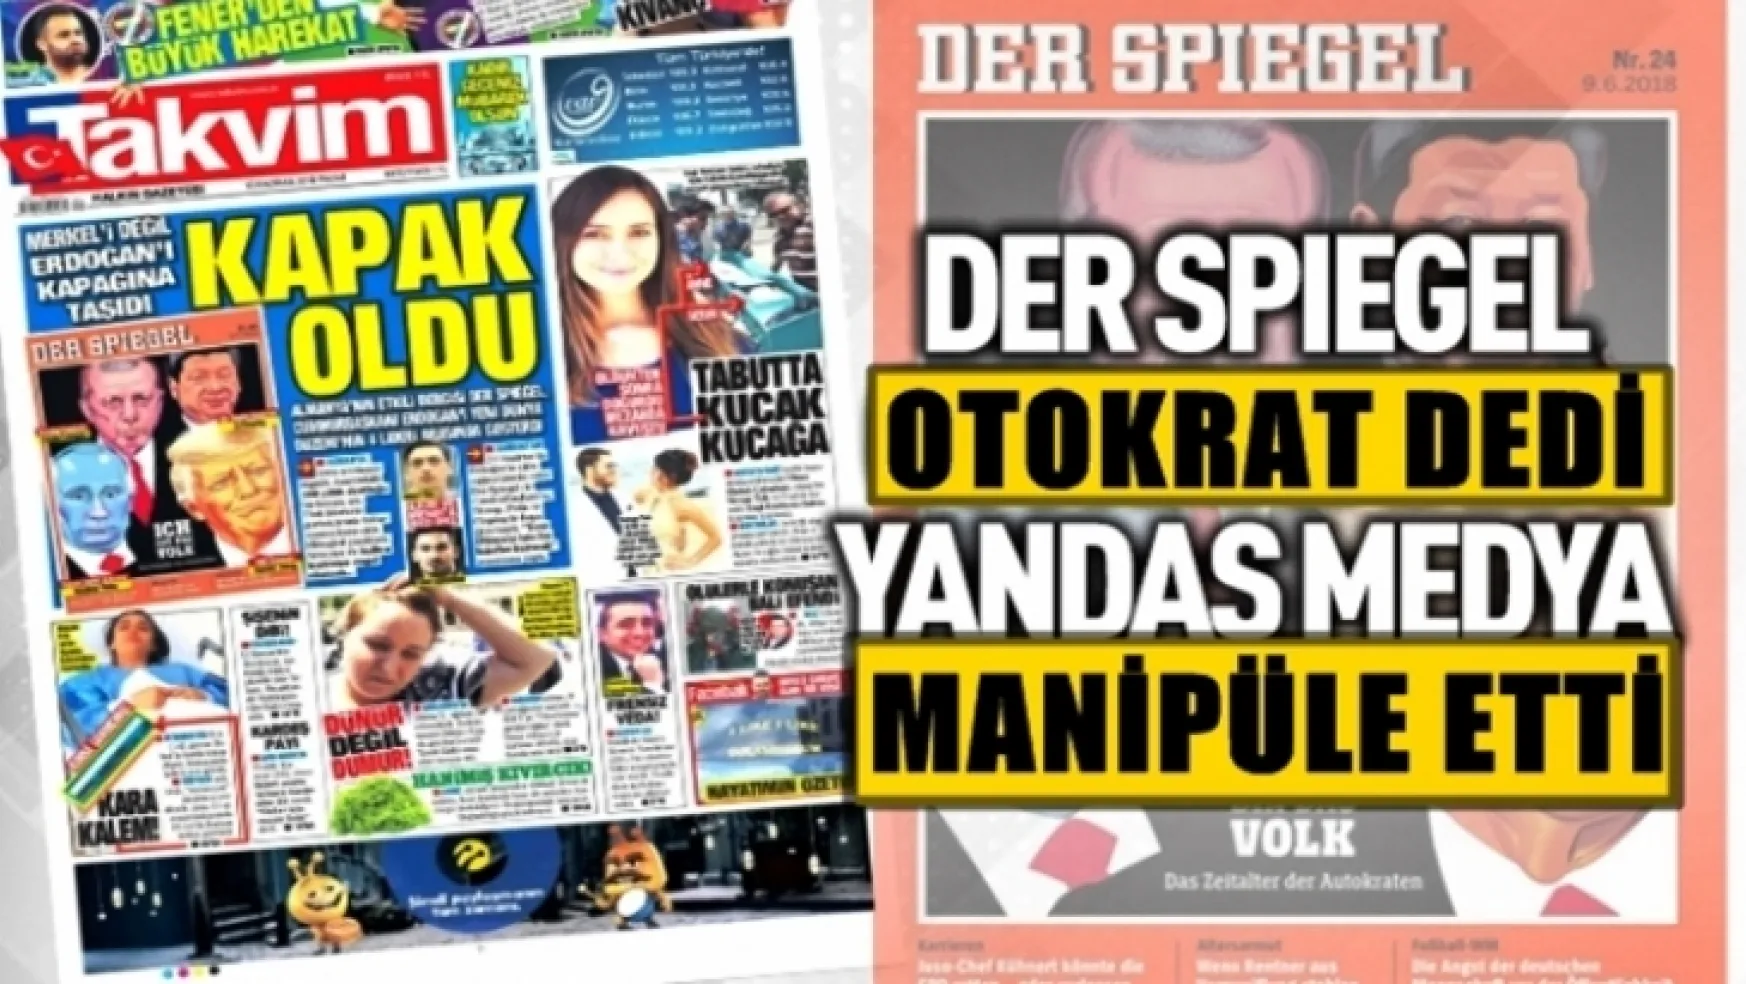 Erdoğan'a Takvim gazetesi dikatör dedi!